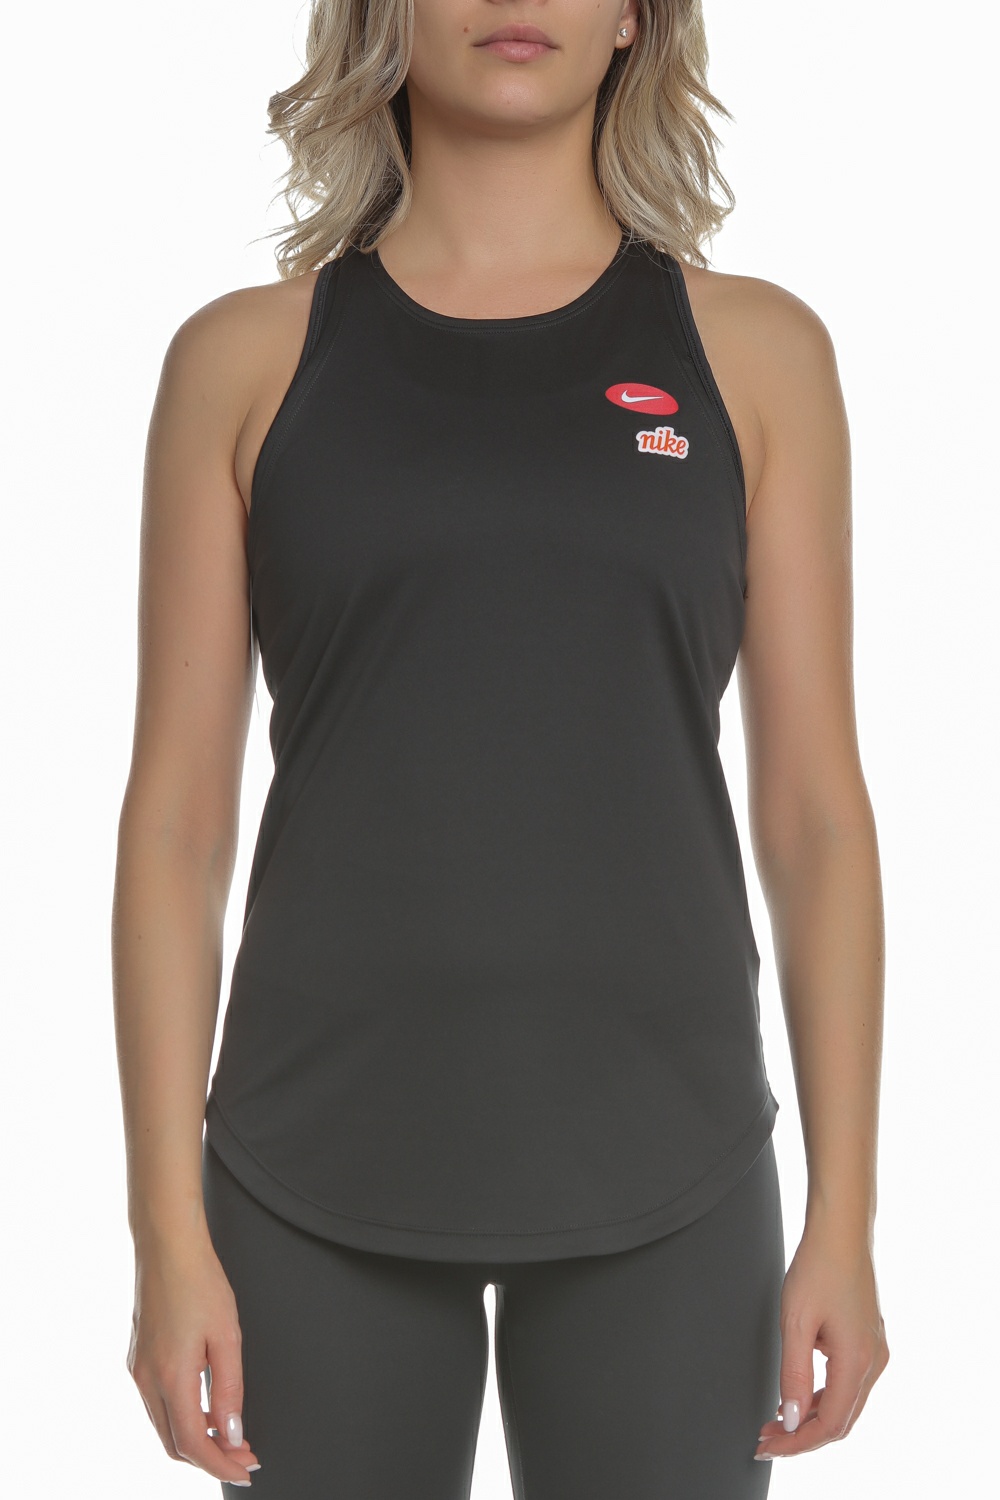 Γυναικεία/Ρούχα/Αθλητικά/T-shirt-Τοπ NIKE - Γυναικεία αμάνικη μπλούζα NIKE μαύρη